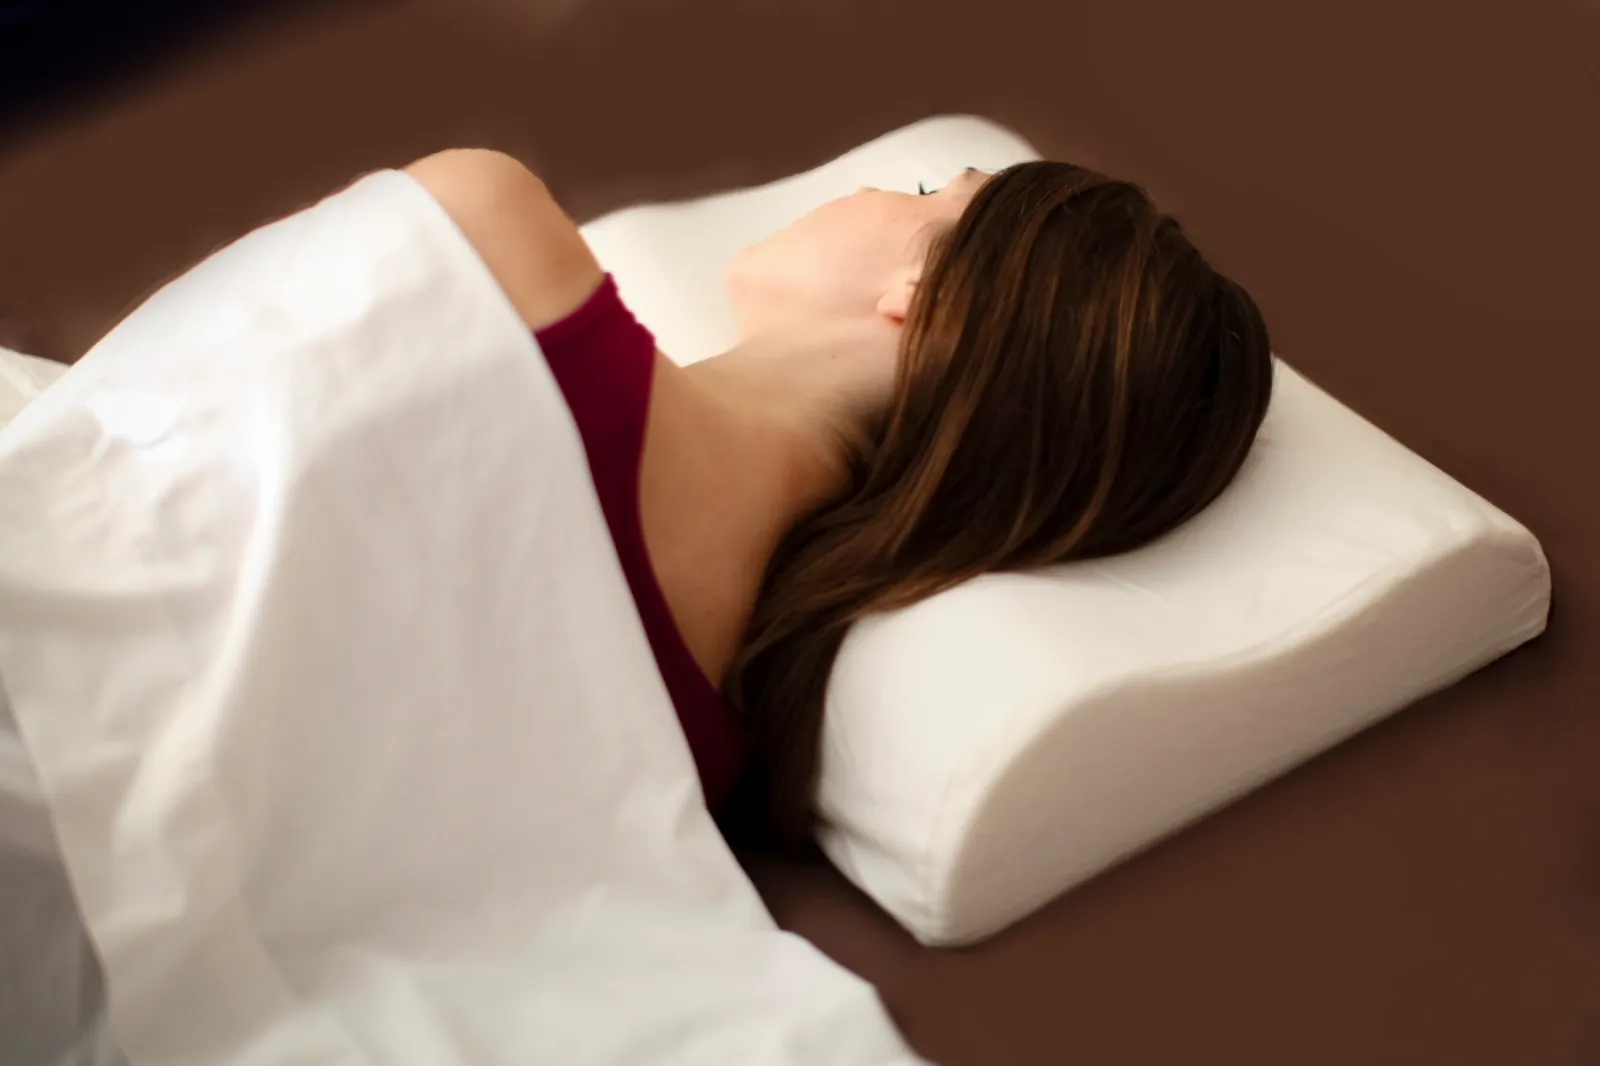 Forme e dimensioni del cuscino letto per dormire davvero bene